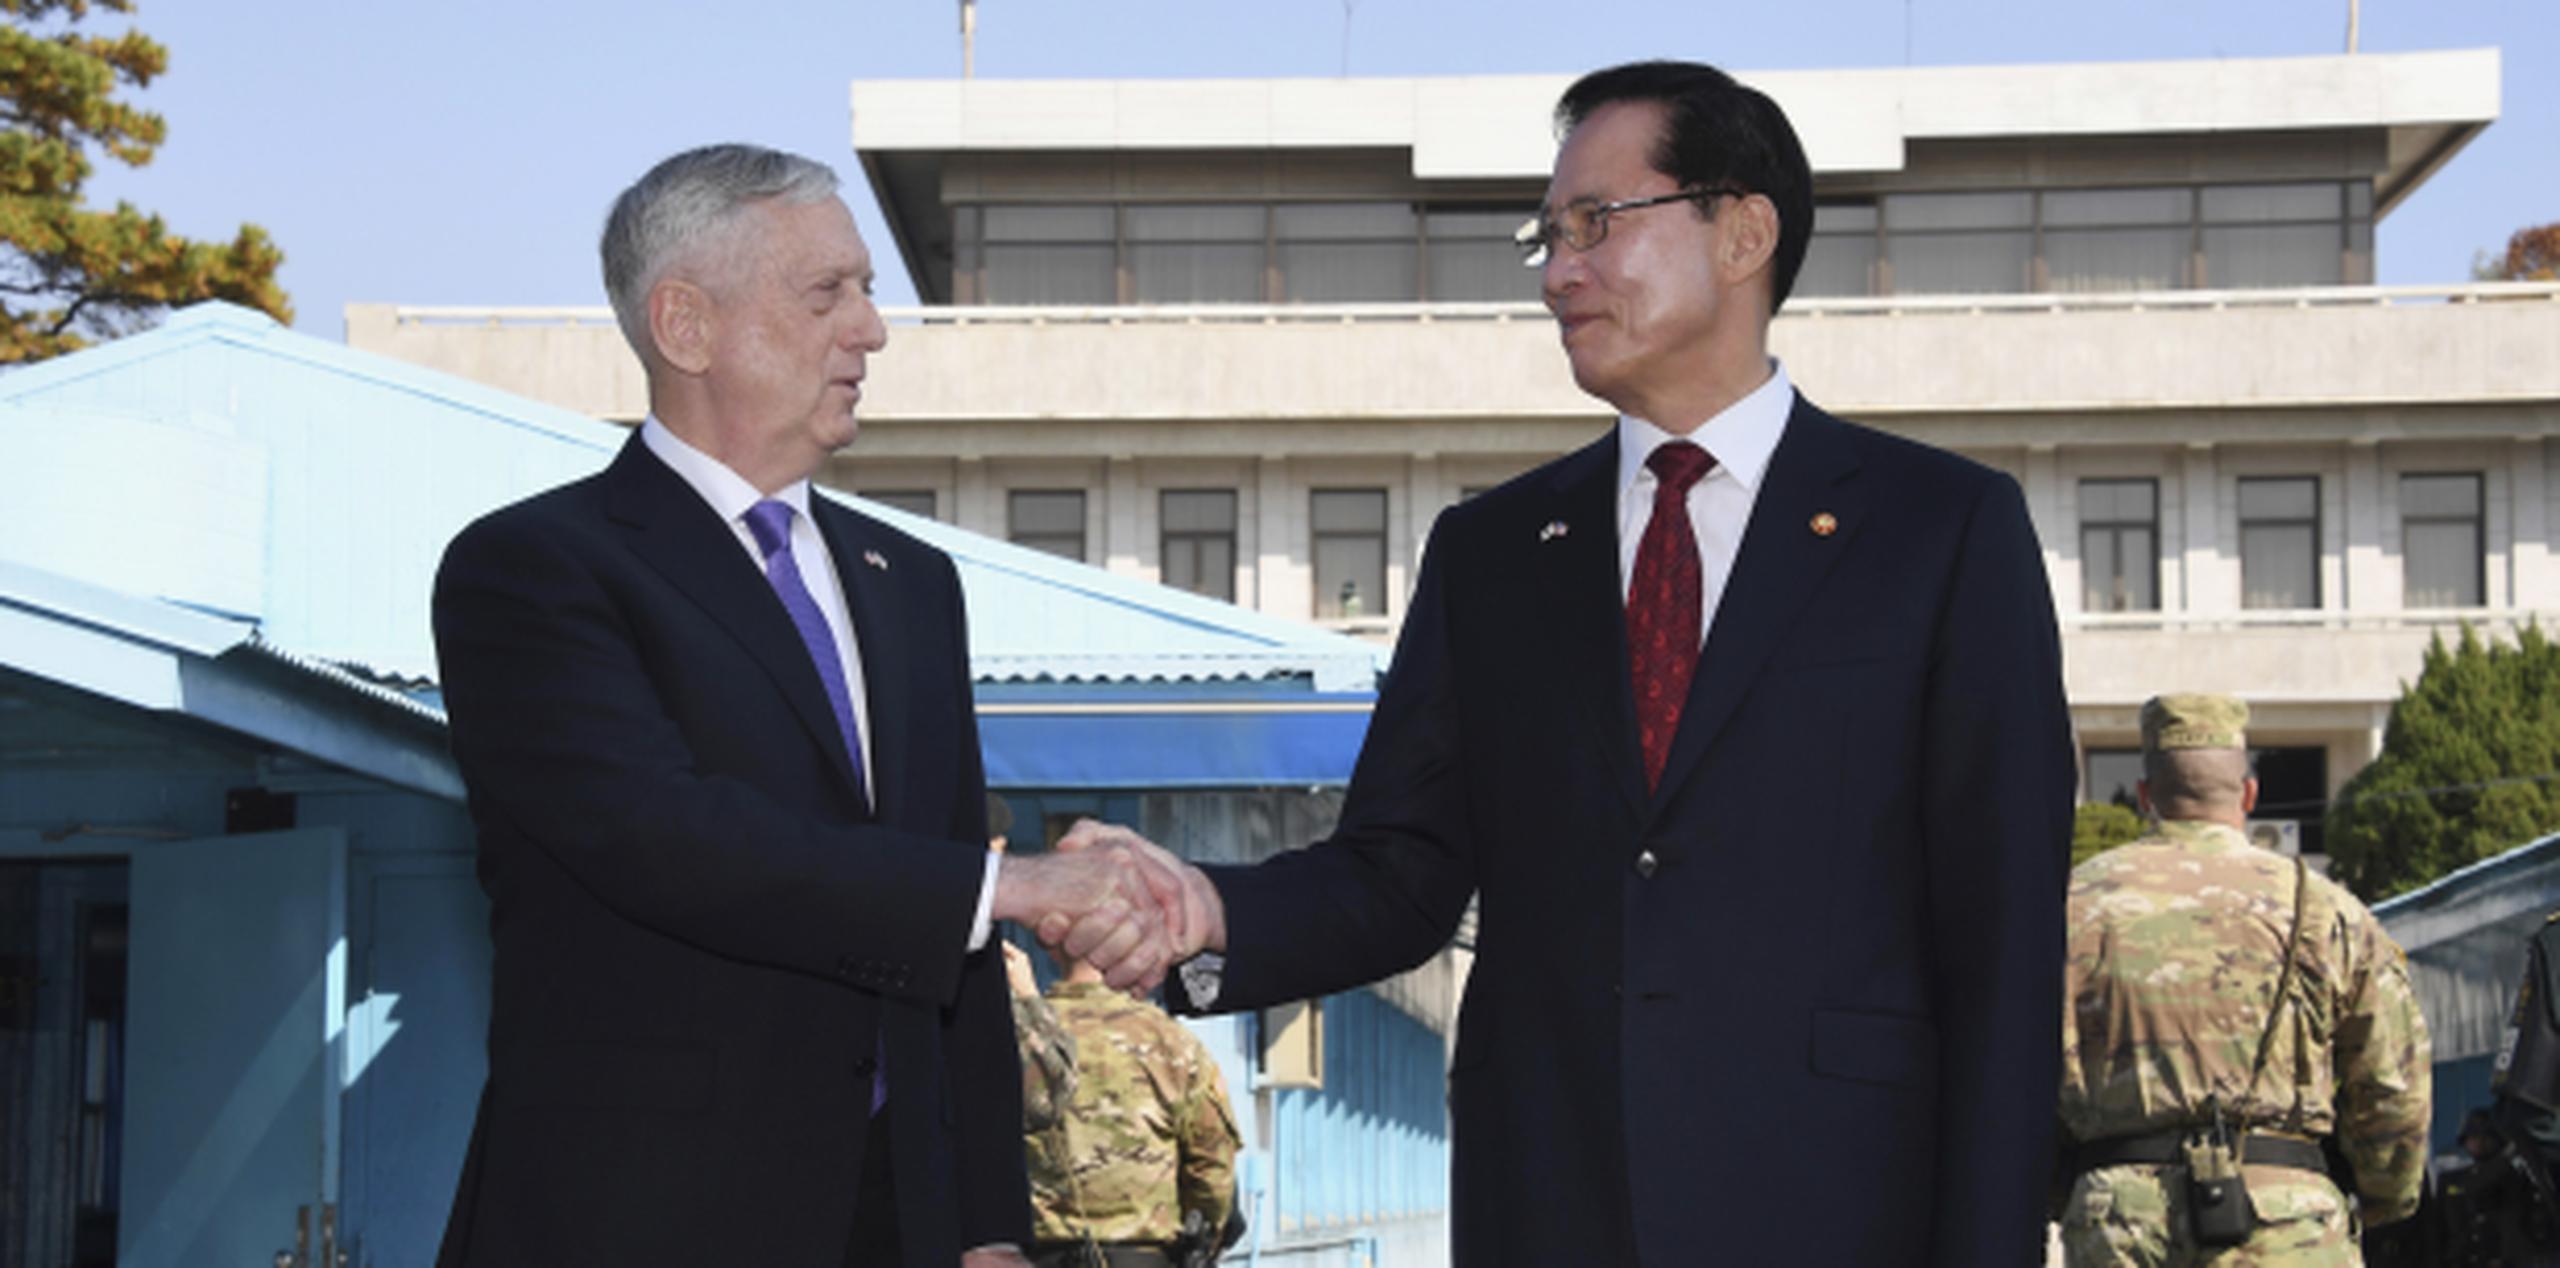 El secretario de Defensa de Estados Unidos, Jim Mattis (izquierda) saluda al ministro de Defensa de Corea del Sur, Song Young-Moo. (AP)